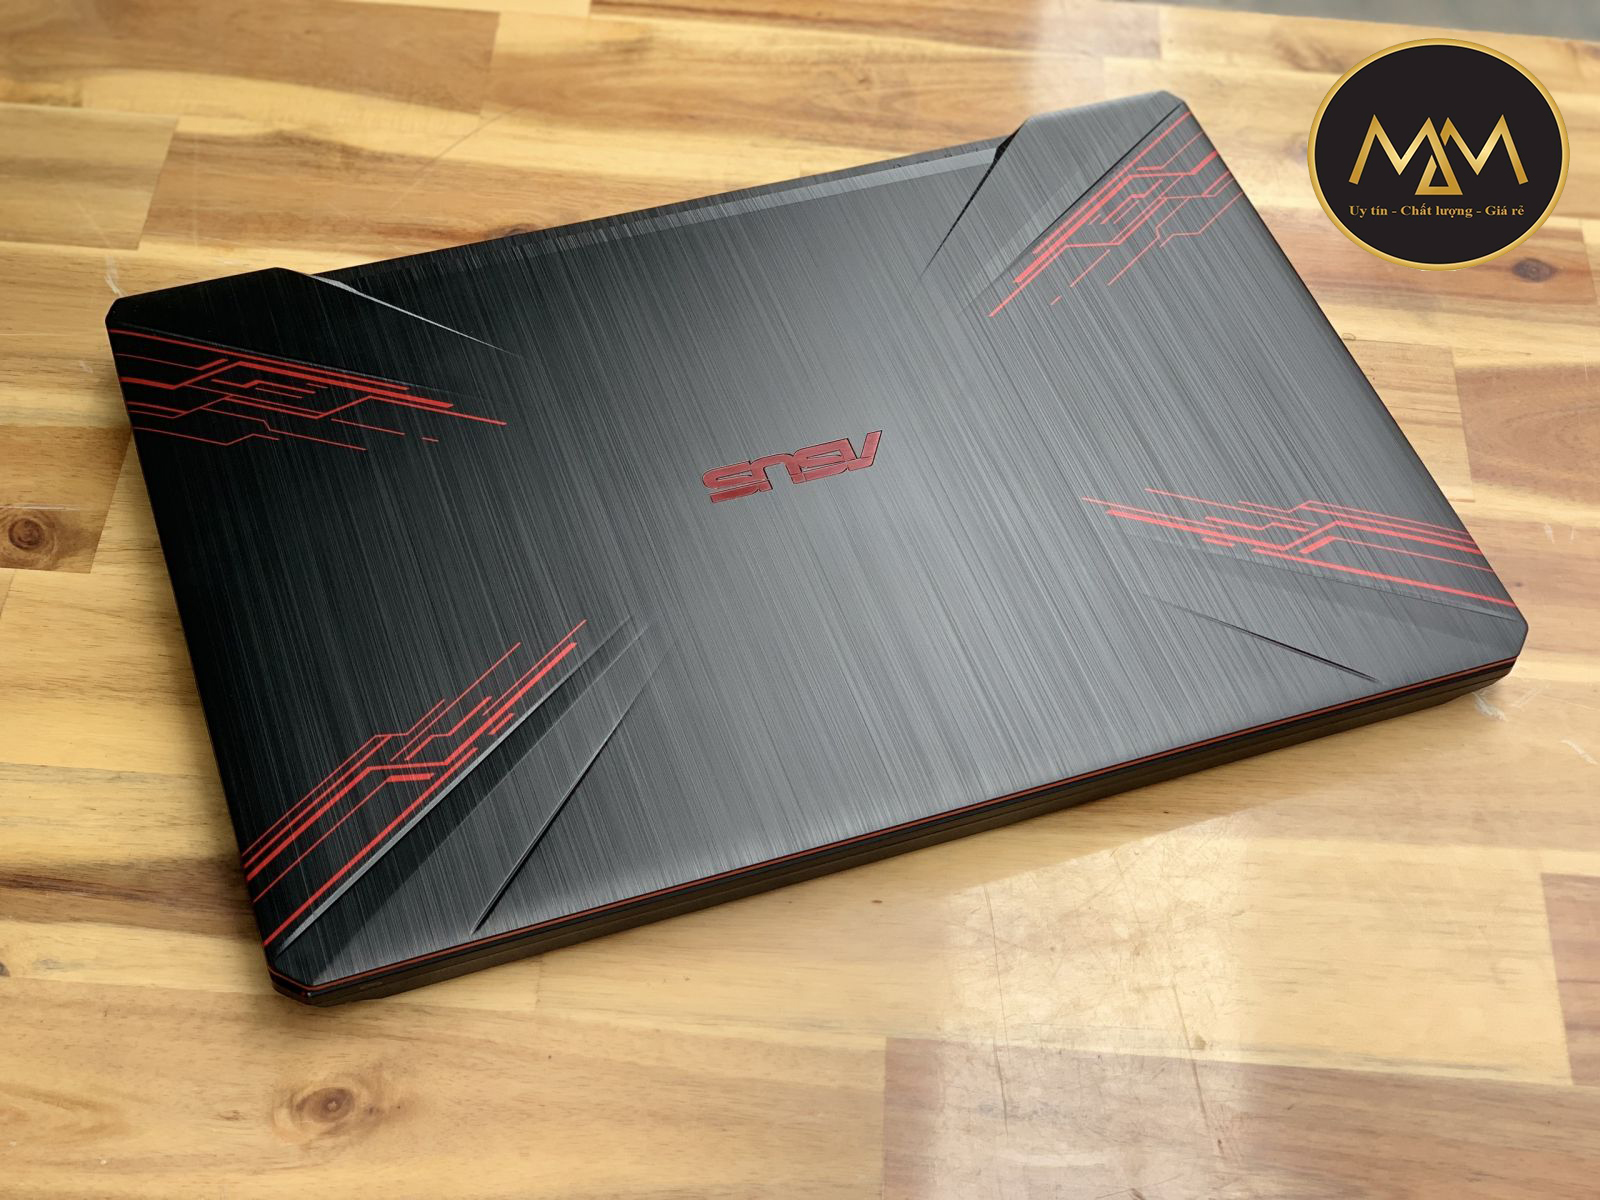 Laptop Asus Tuf Fx504Ge - En047T I7 8750H/ 8G/ Ssd128 + 1000G/ Gtx1050Ti  4G/ Led Đỏ/ Chuyên Game